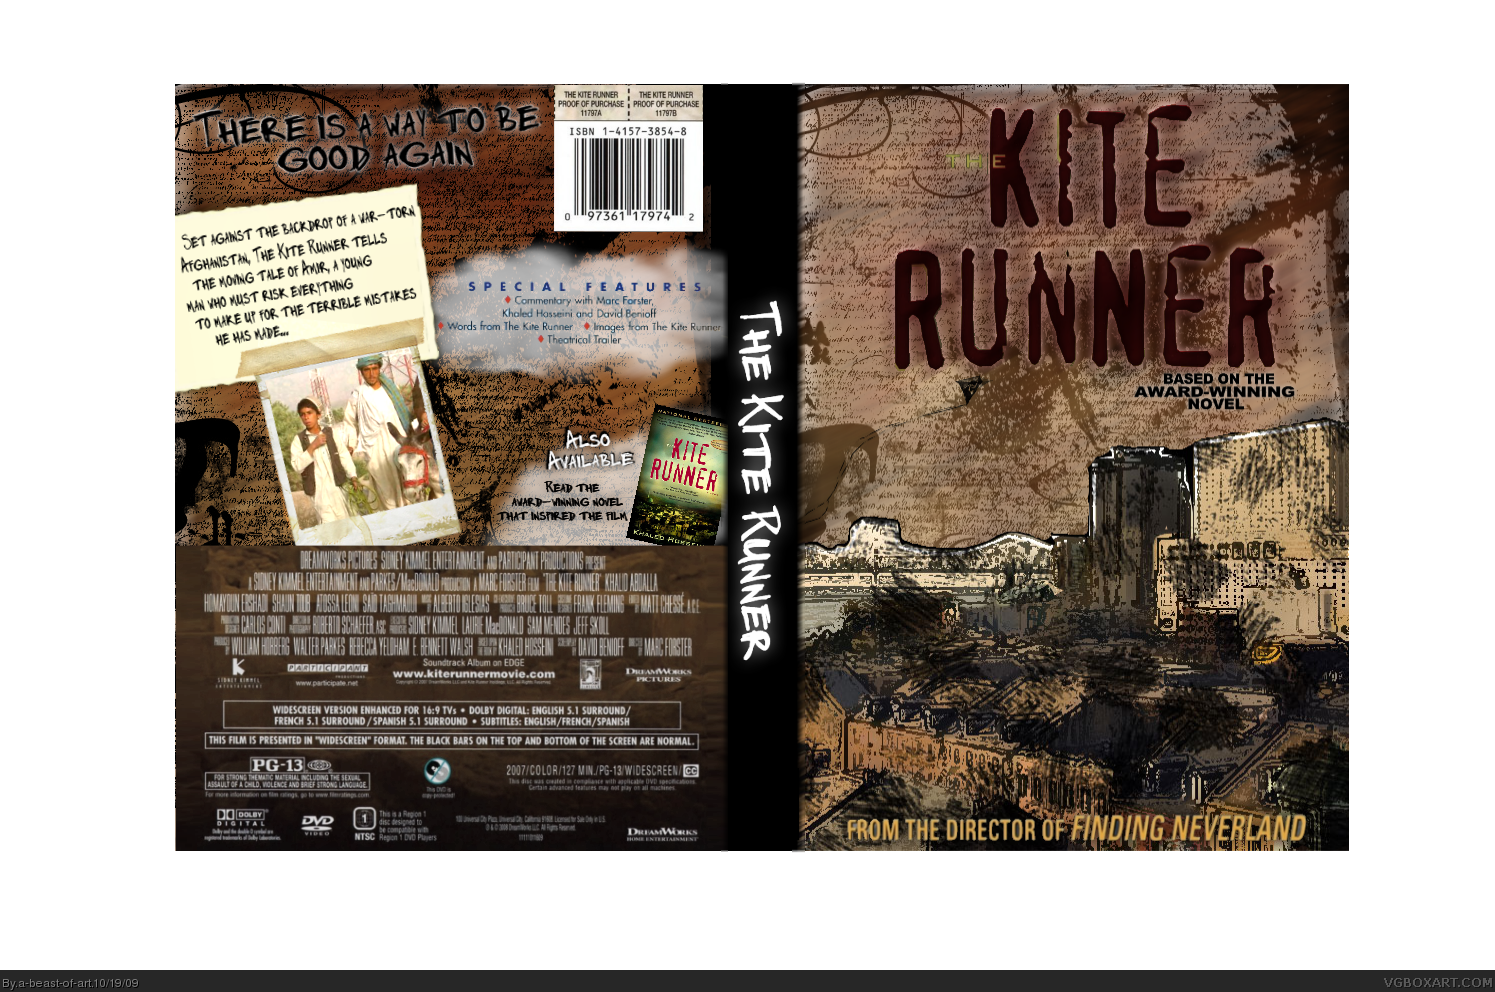 The Kite Runner box cover